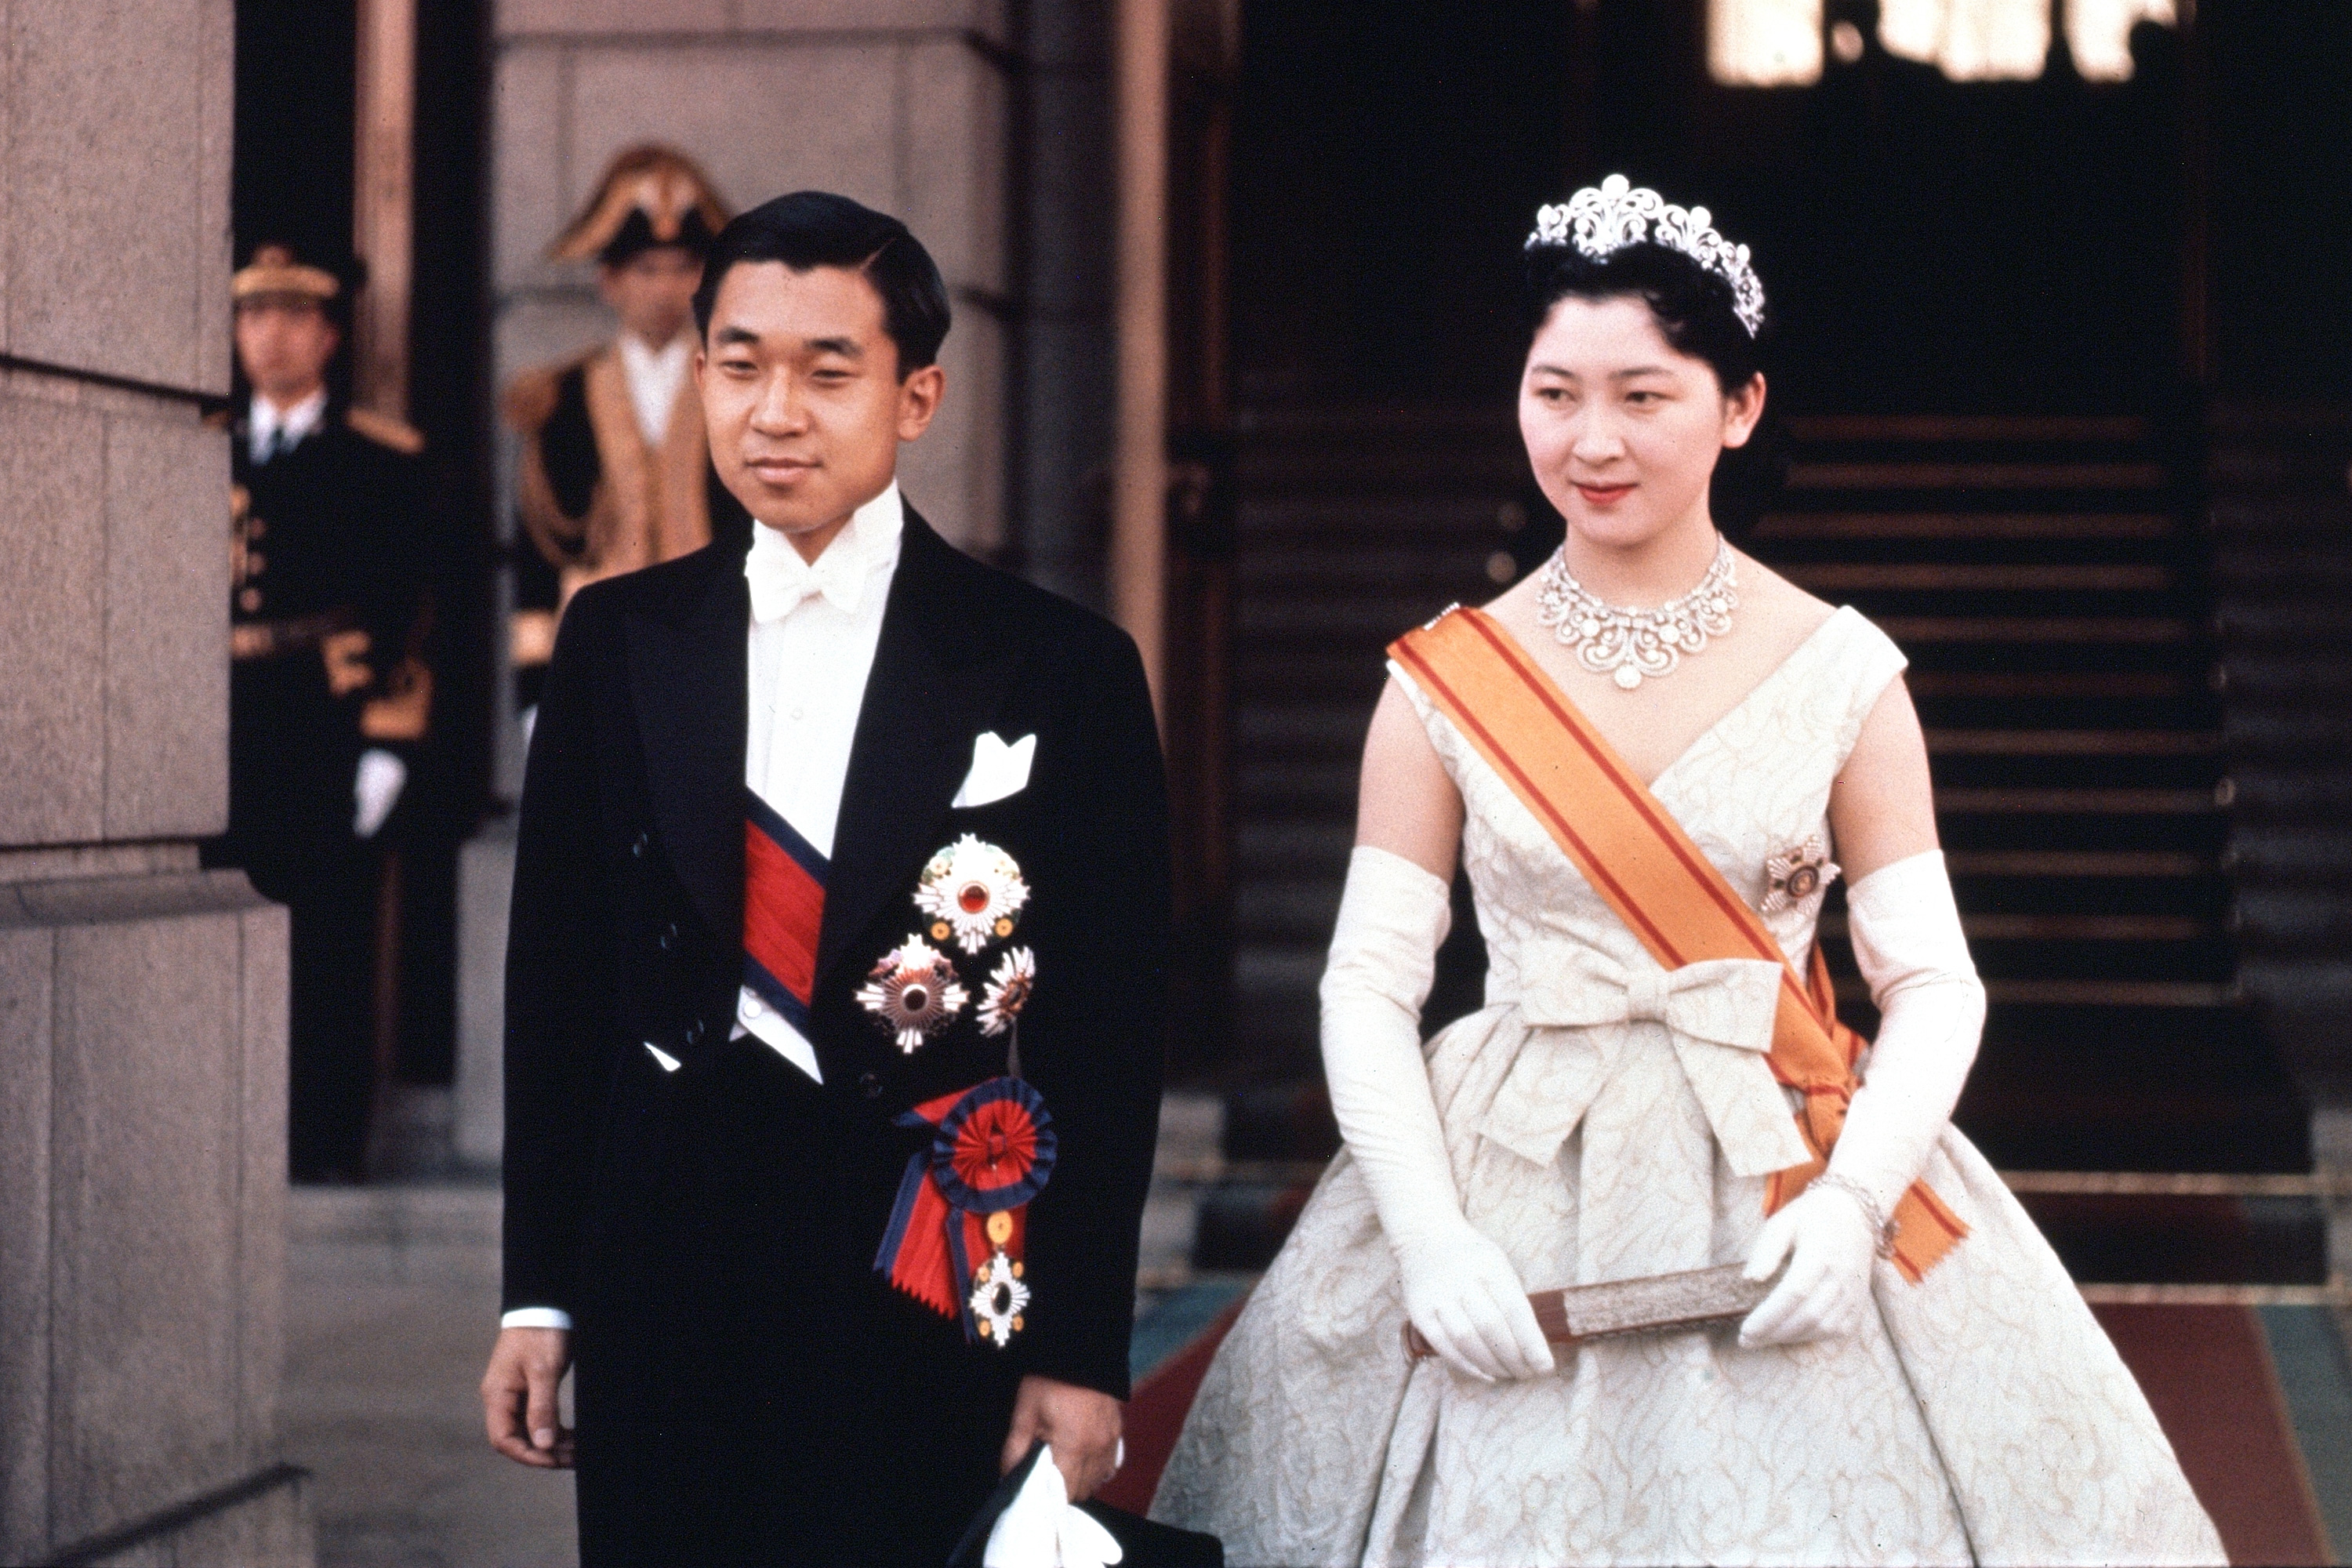 http://cdn.cnn.com/cnnnext/dam/assets/190424110102-11-akihito-mochiko-wedding-restricted.jpg